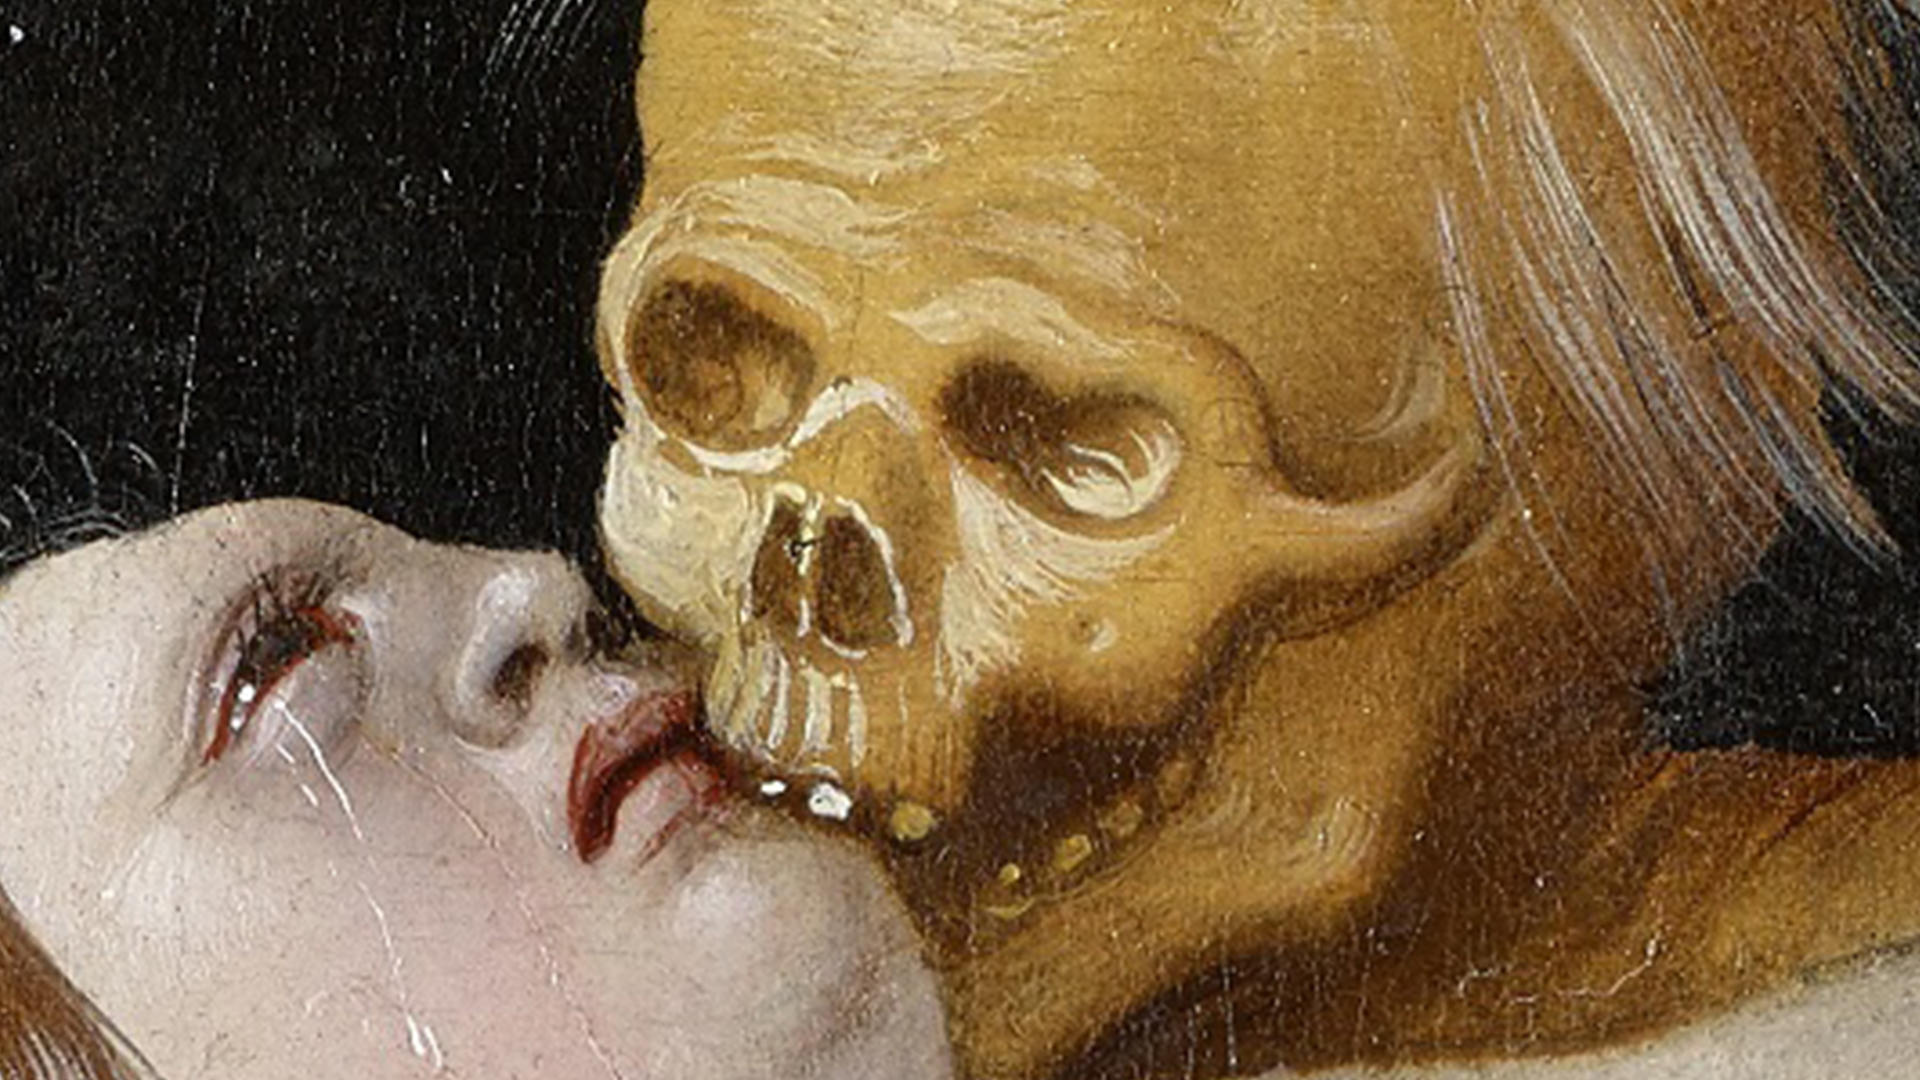 Augenpartie aus Hans Baldung Griens Gemälde Der Tod und die Frau. Zu sehen ist wie der Tod, der wie ein gelbbrauner Toter aussieht in das Gesicht der Frau beisst.